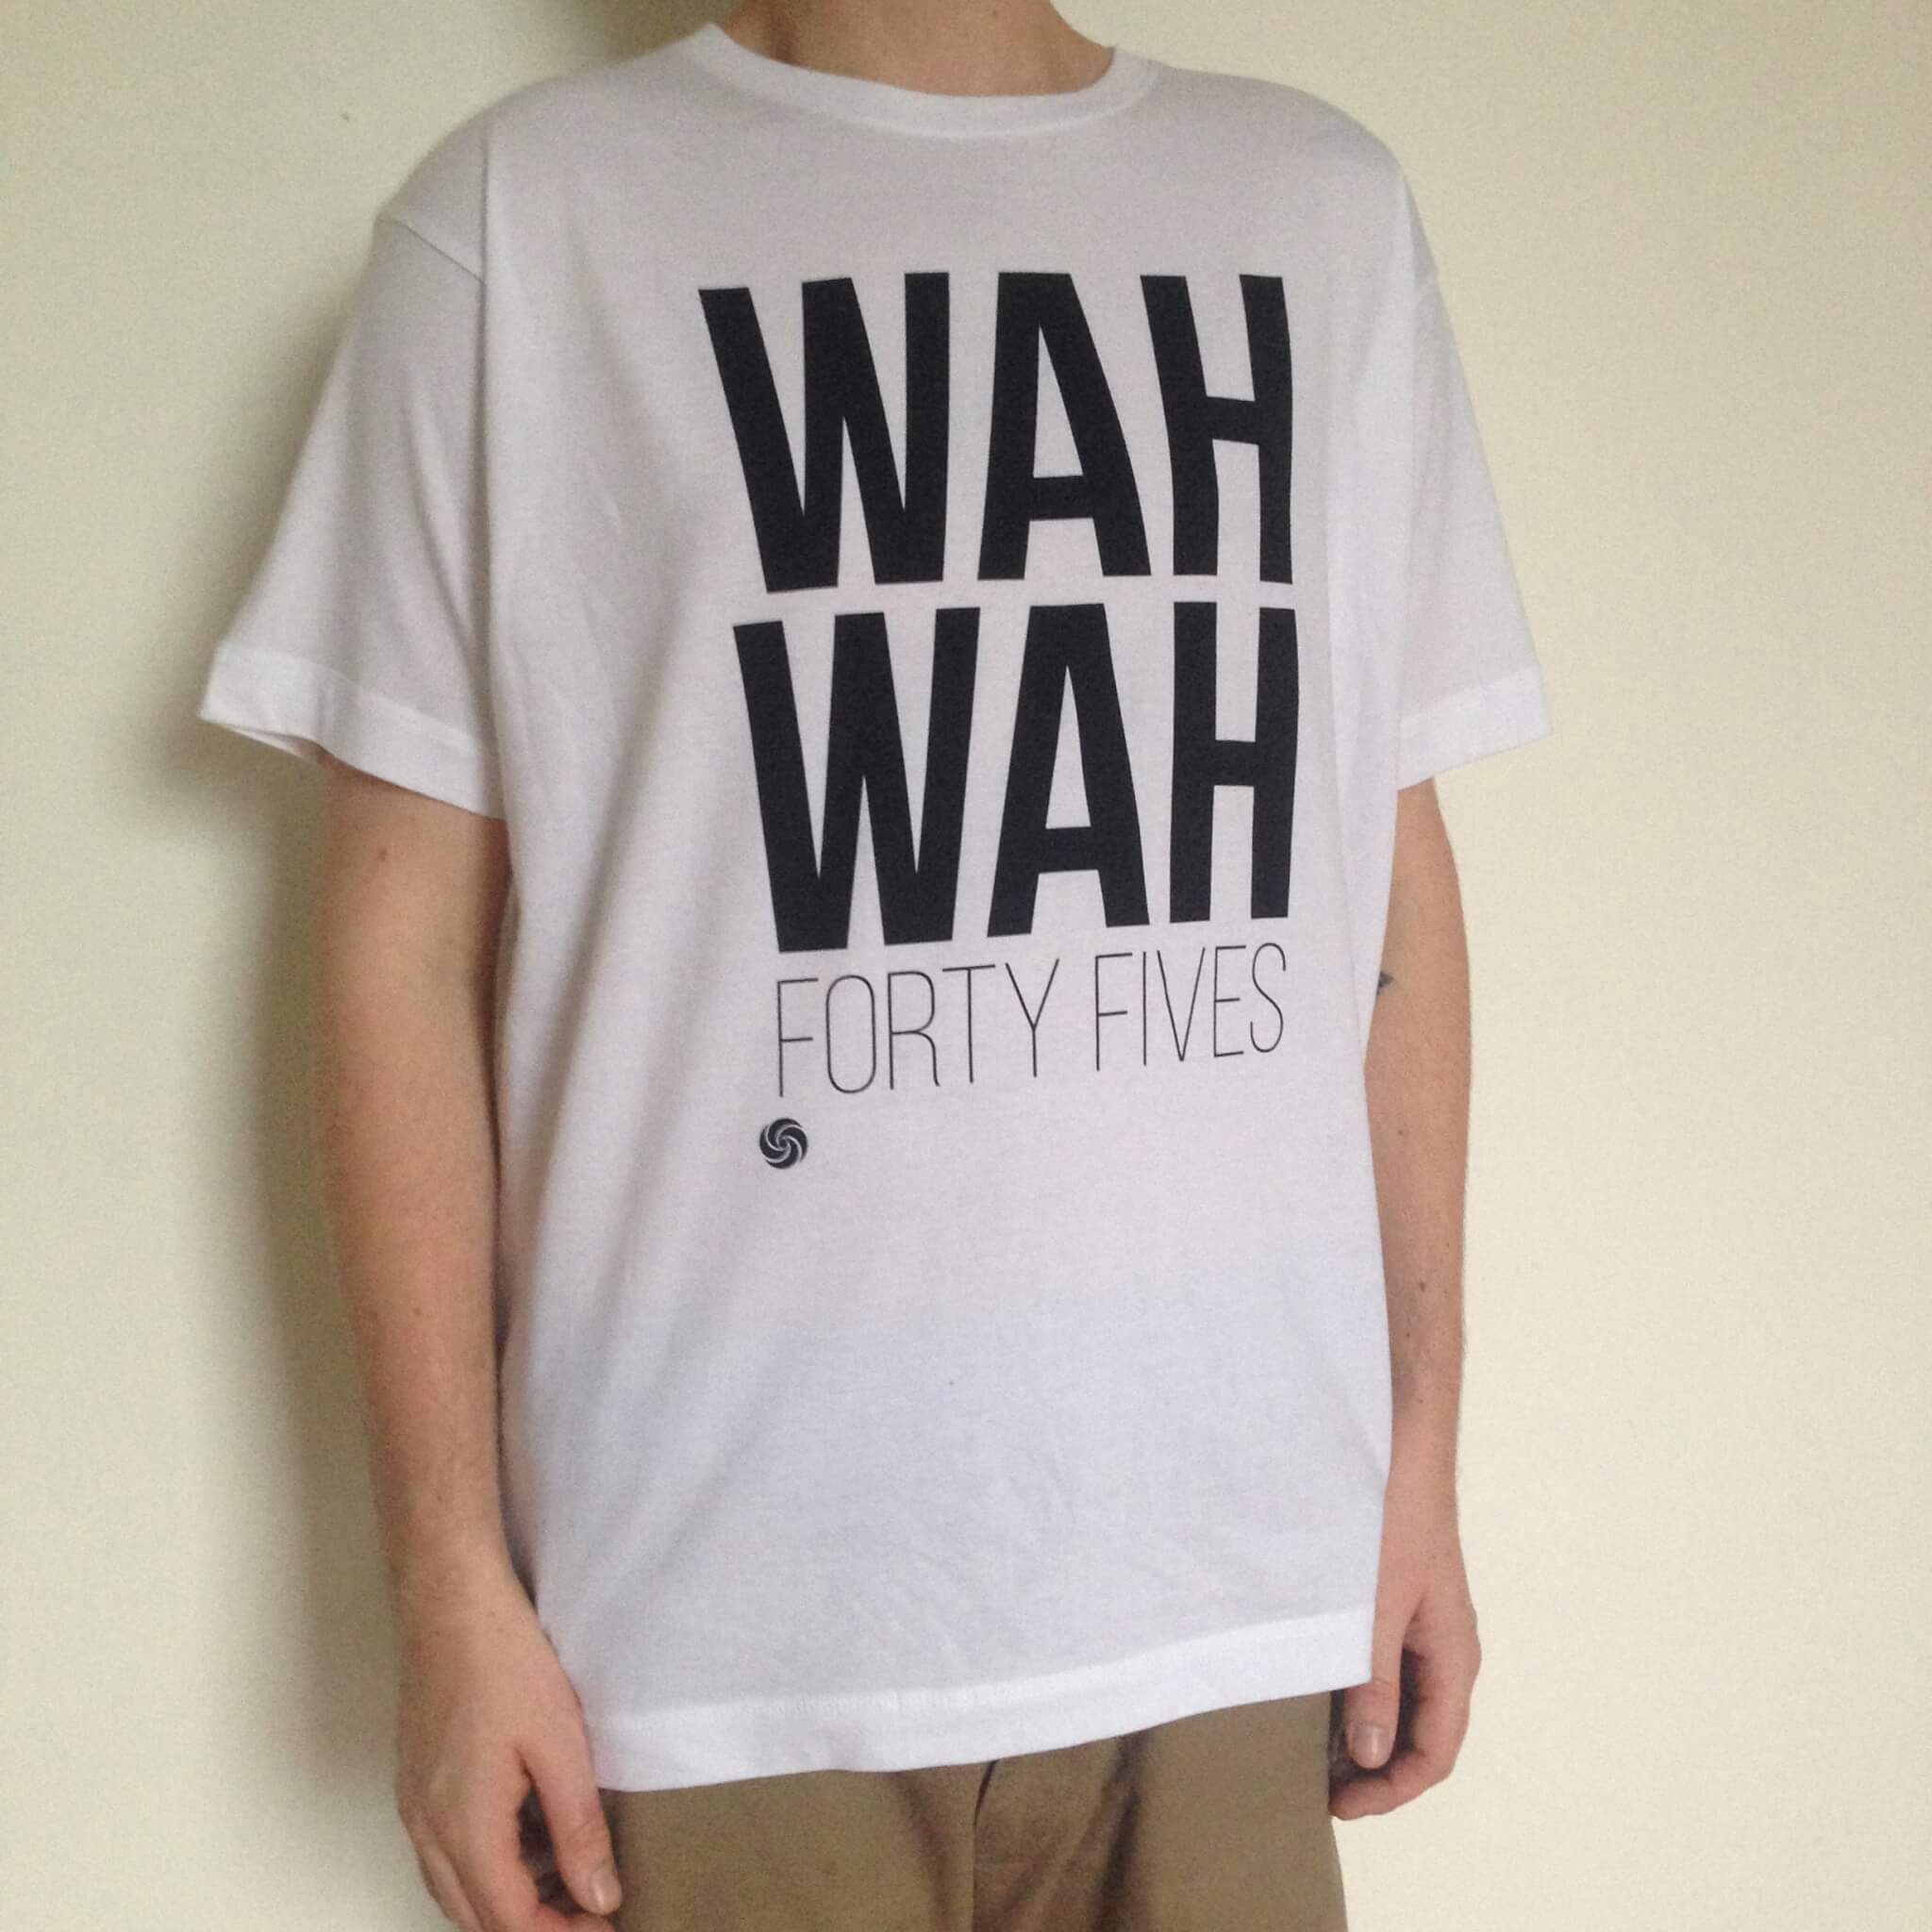 Wah Wah T Shirt Wah Wah 45s